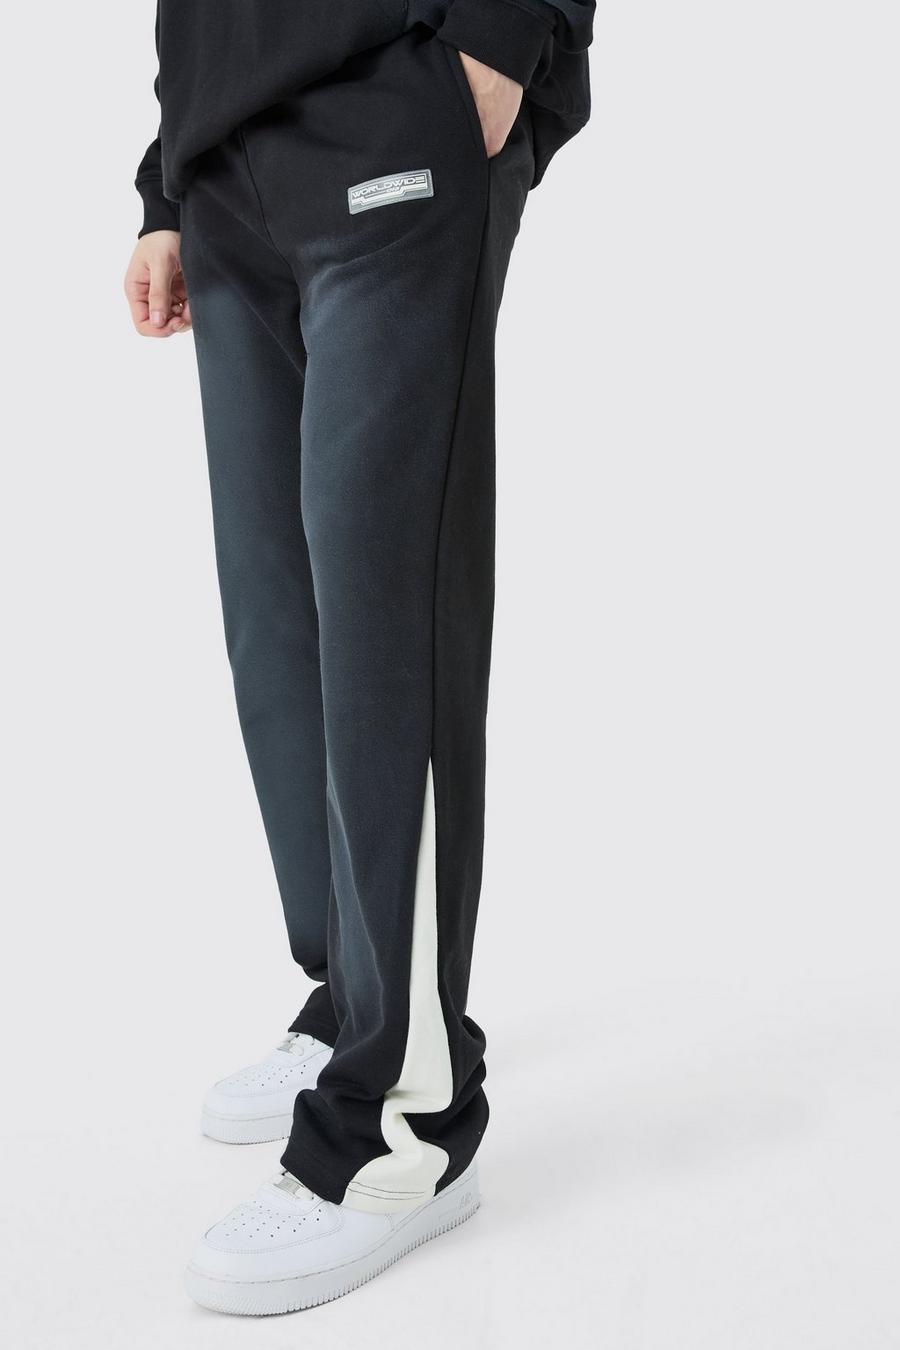 Pantalón deportivo Tall Regular de tela rizo desteñida con refuerzos, Black